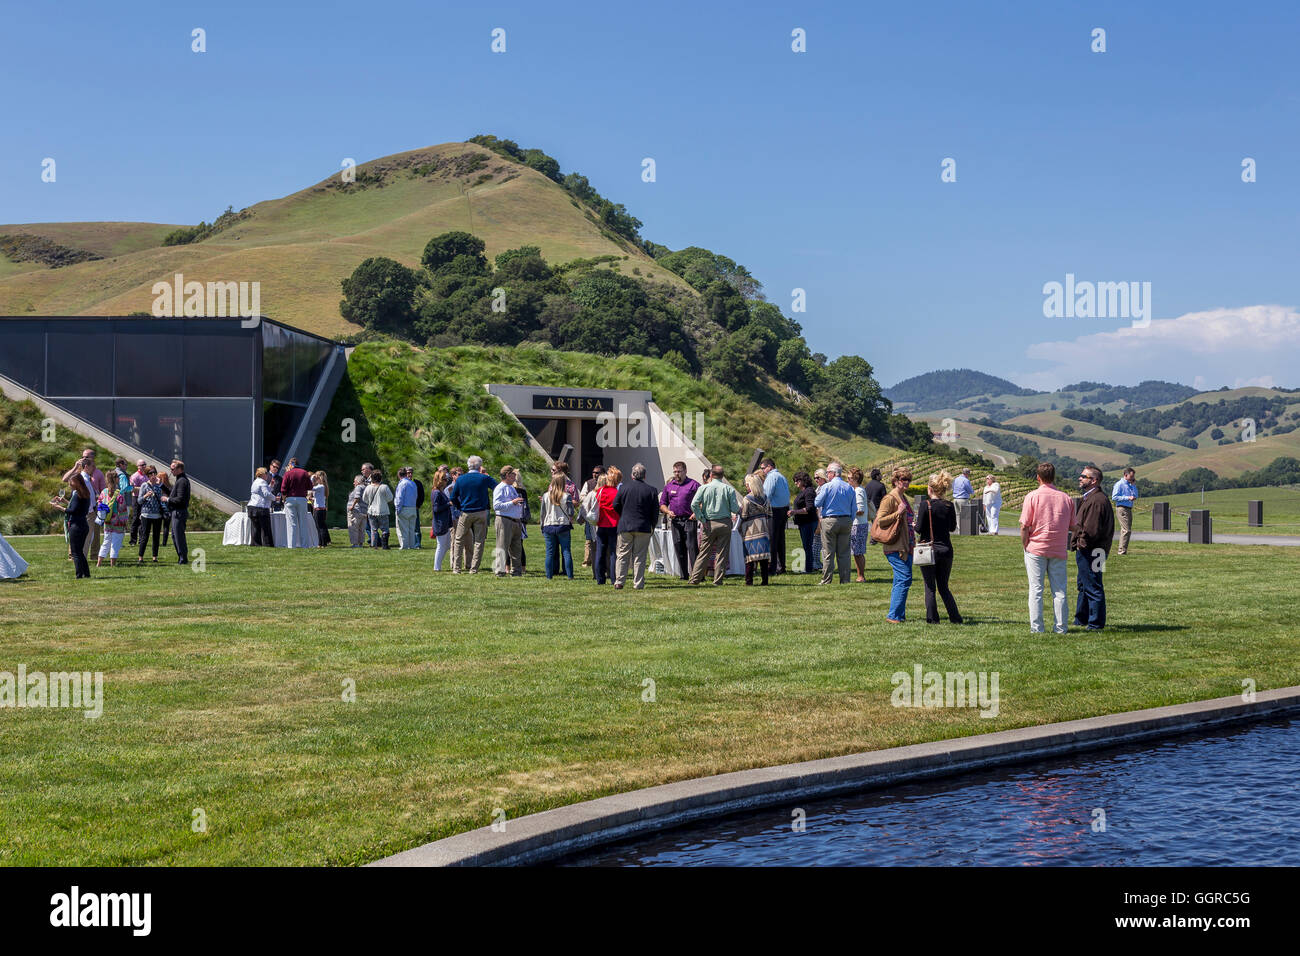 Leute, Touristen, Weinprobe, Artesa Weinberge und Weinkeller, Carneros region, Napa Valley, Kalifornien, USA Stockfoto